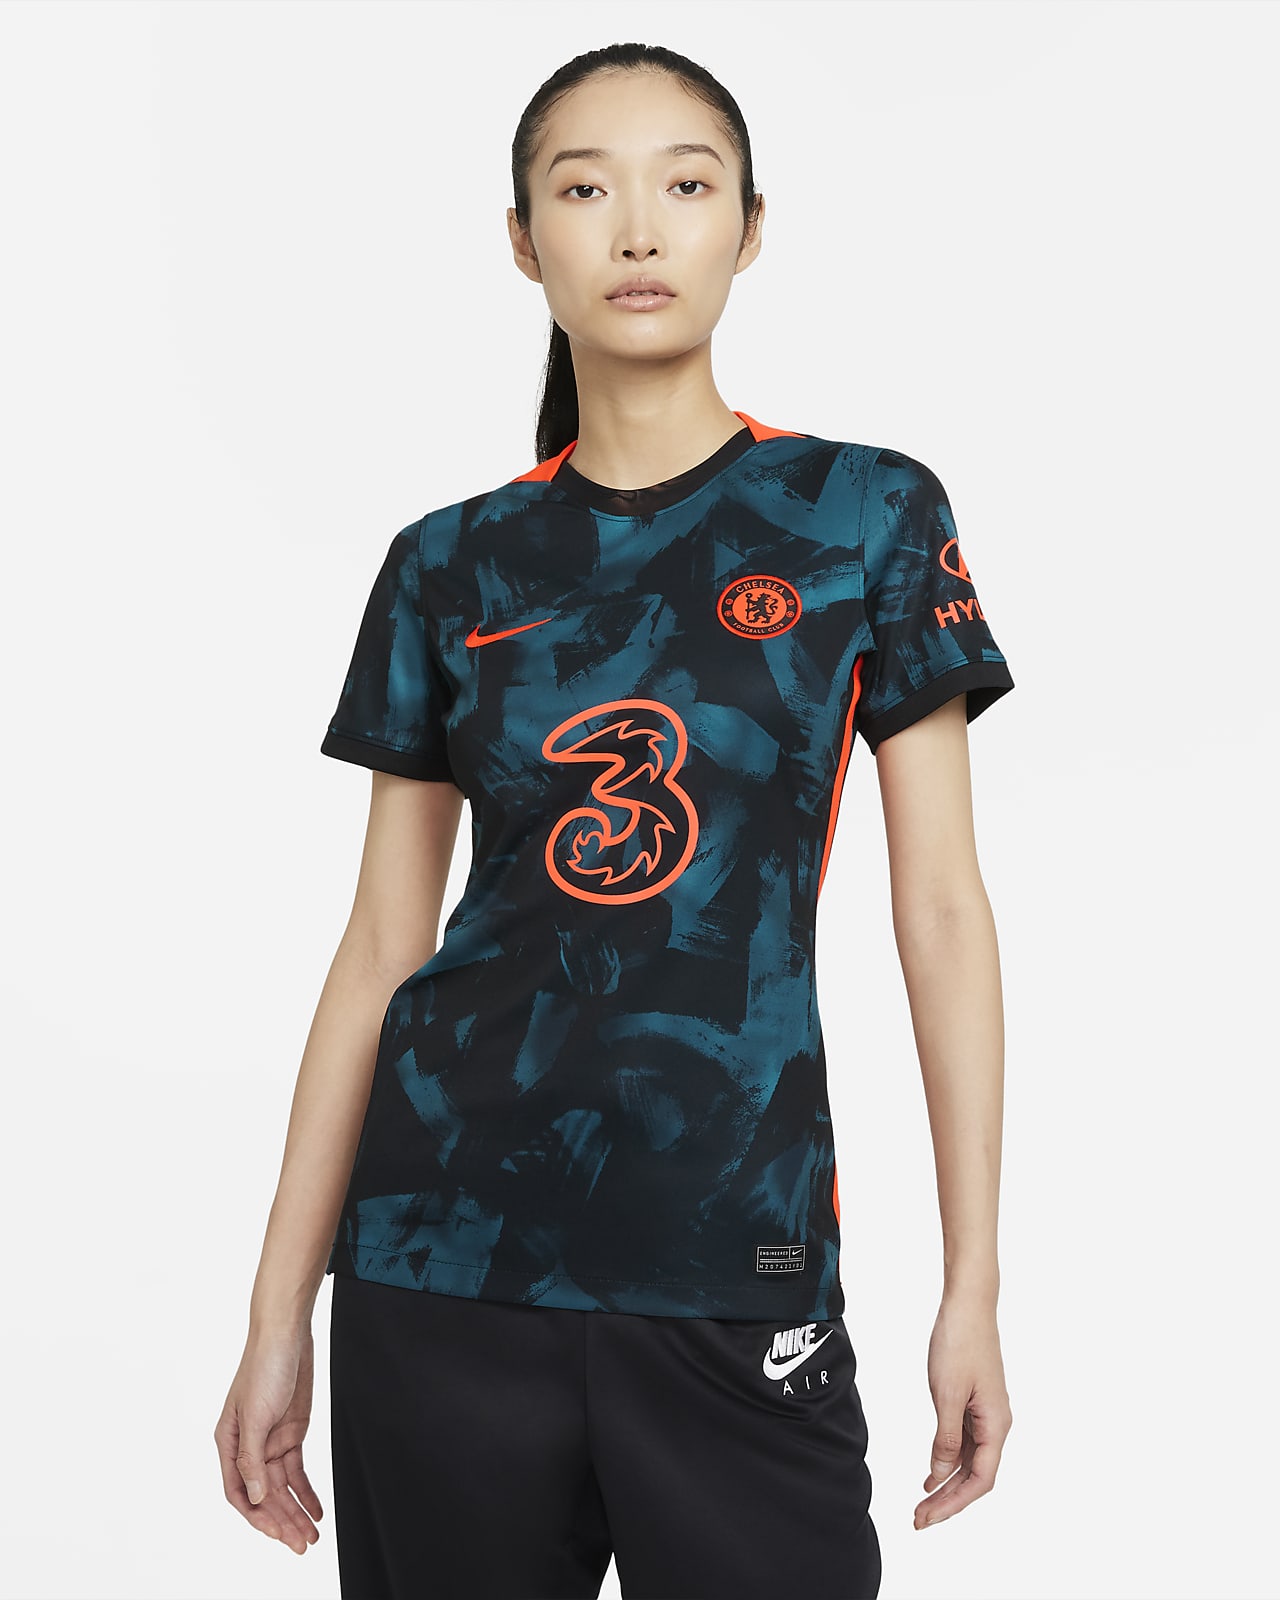 Chelsea F.C. 2021/22 Stadium Third Women's Nike Dri-FIT Football Shirt